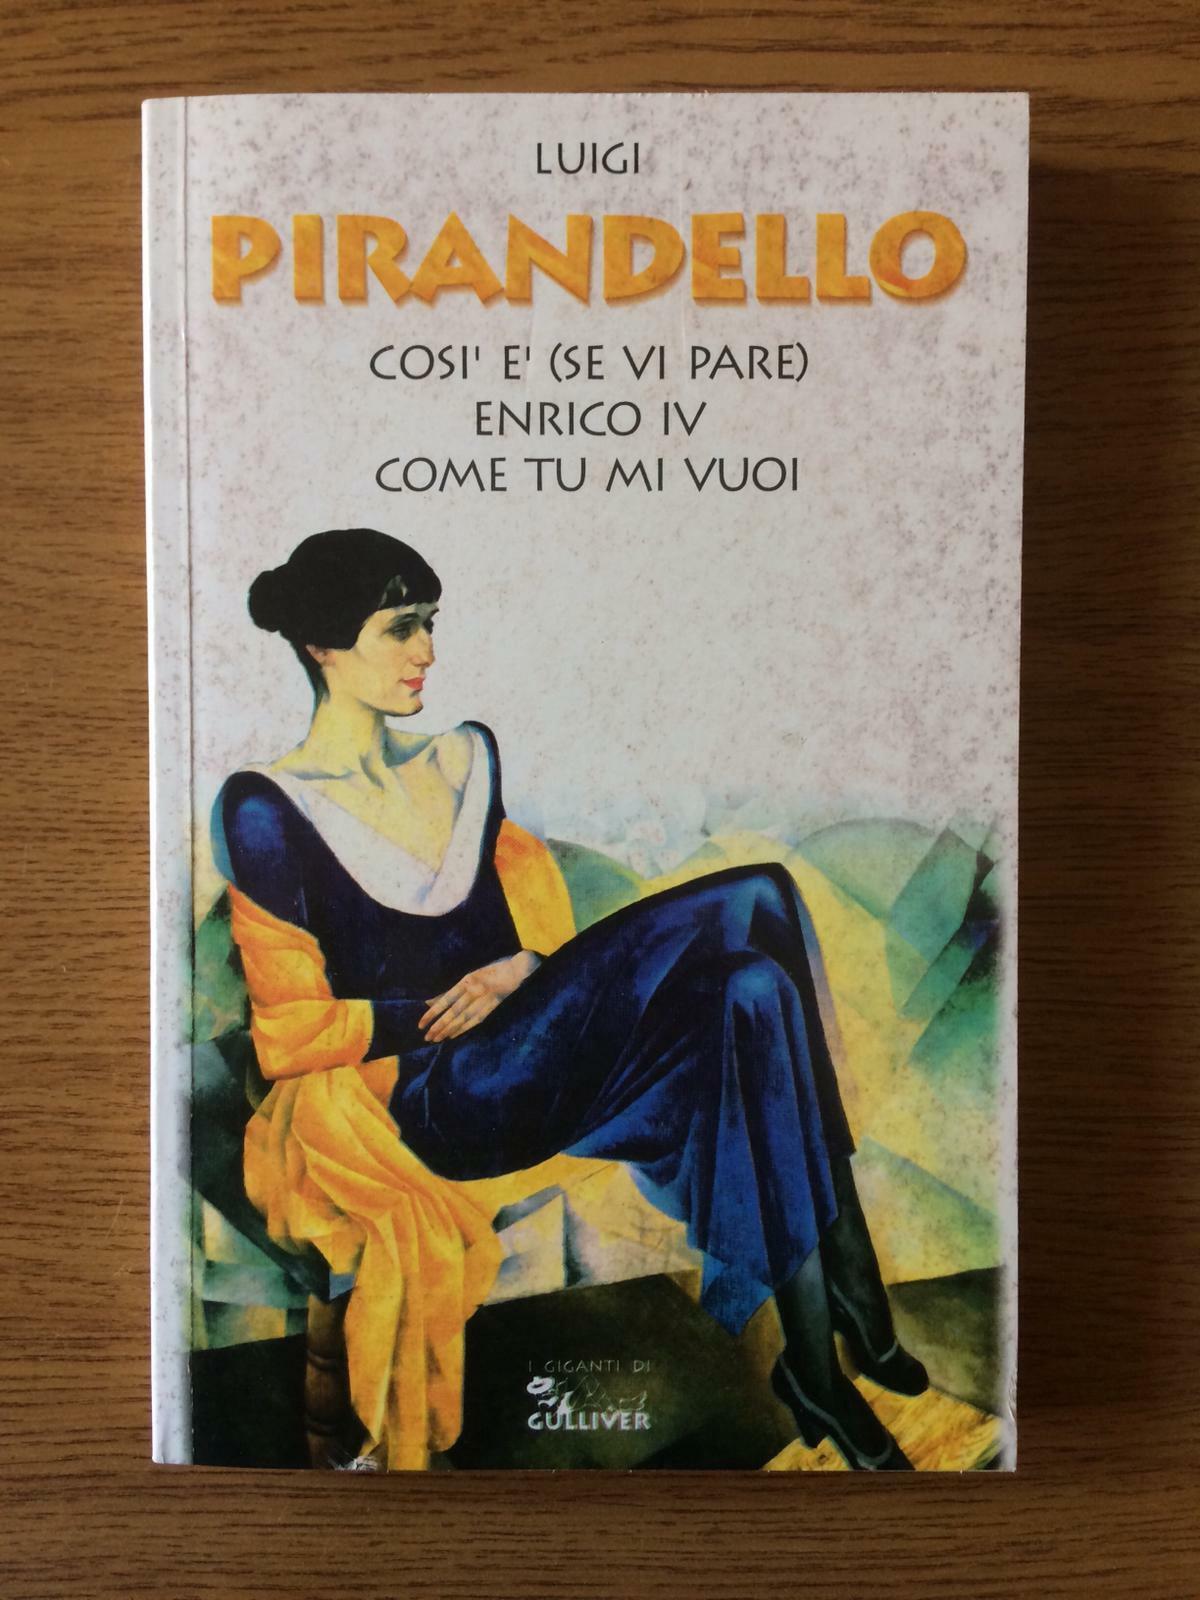 Cos? e' (se vi pare)/Enrico IV/Come tu mi vuoi -L. Pirandello -O.Books -1995 -AR